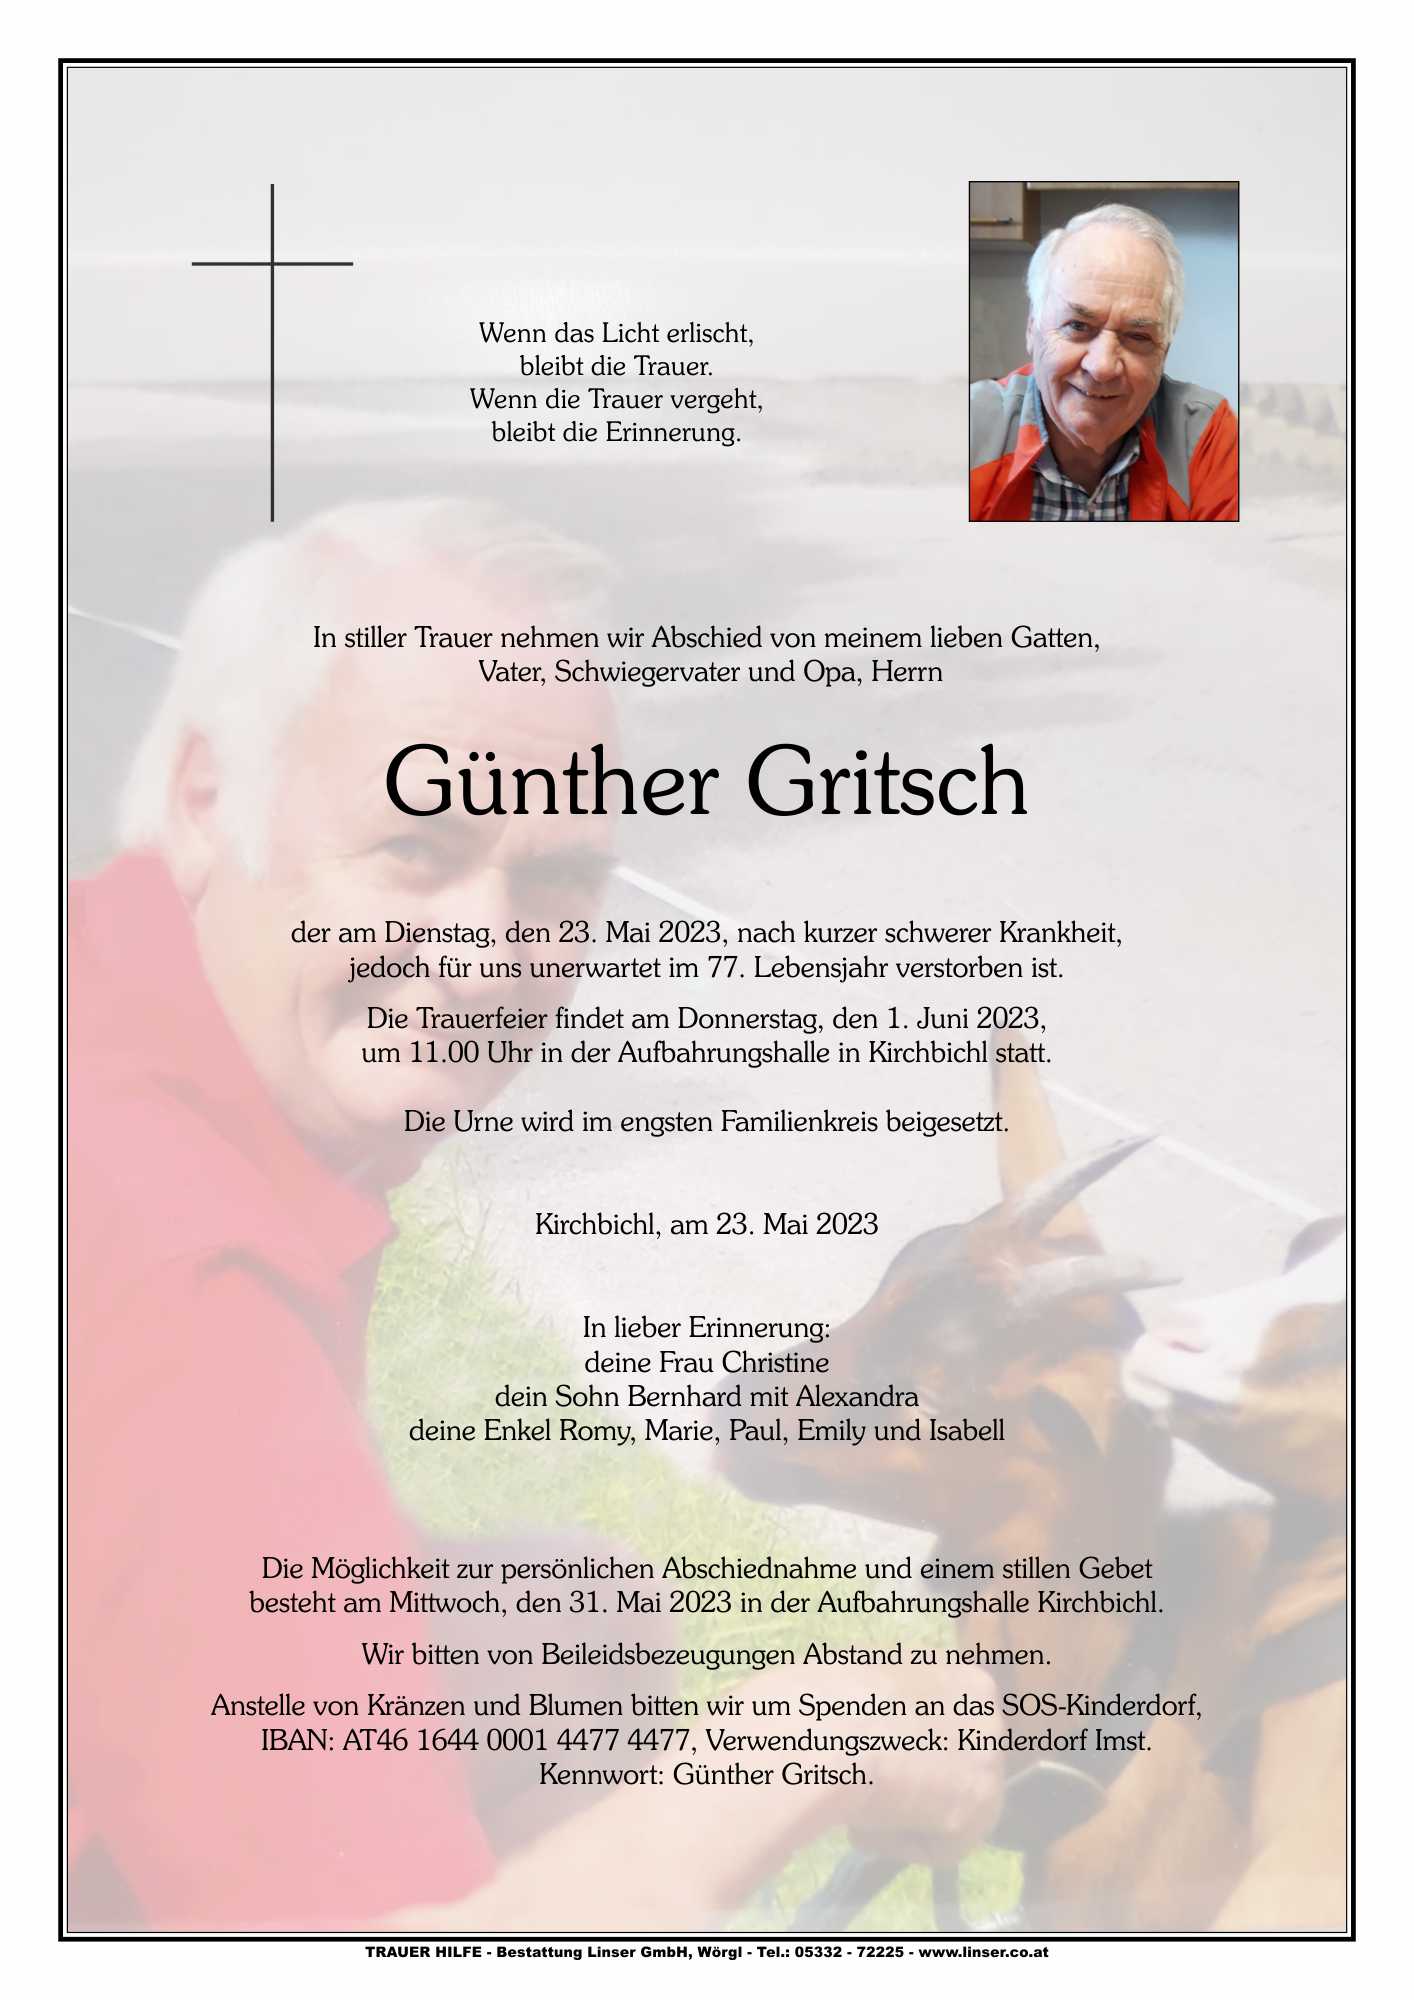 Günther Gritsch